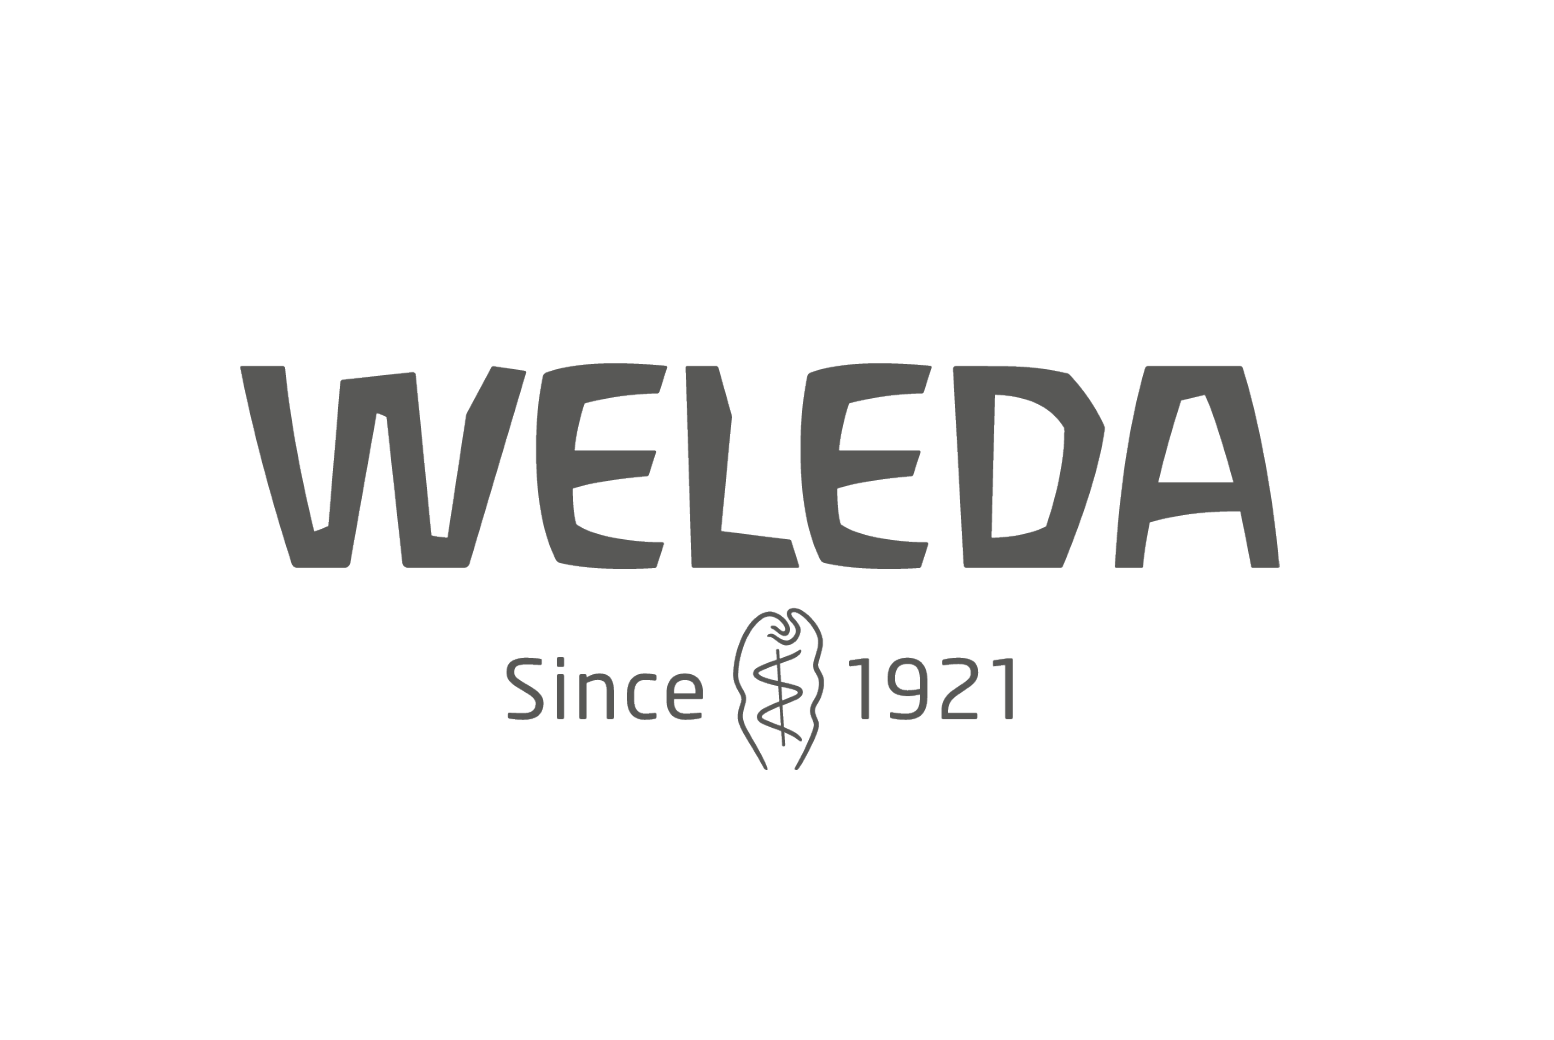 Weleda logo